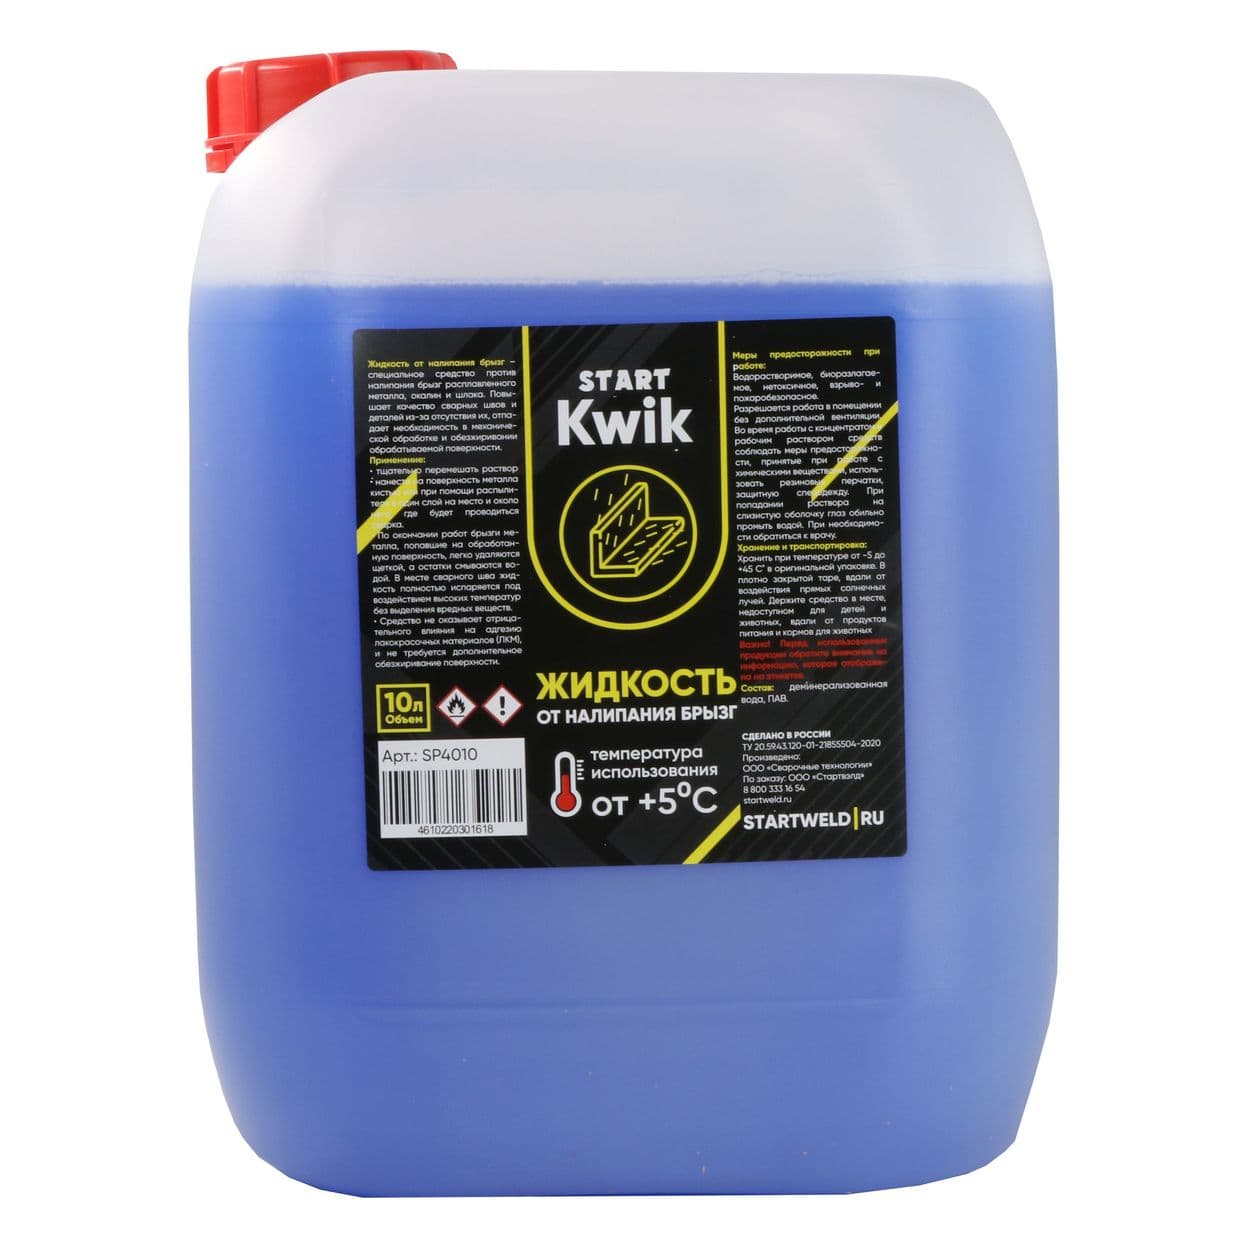 Купить Жидкость от налипания брызг START KWIK 10 л SP4010